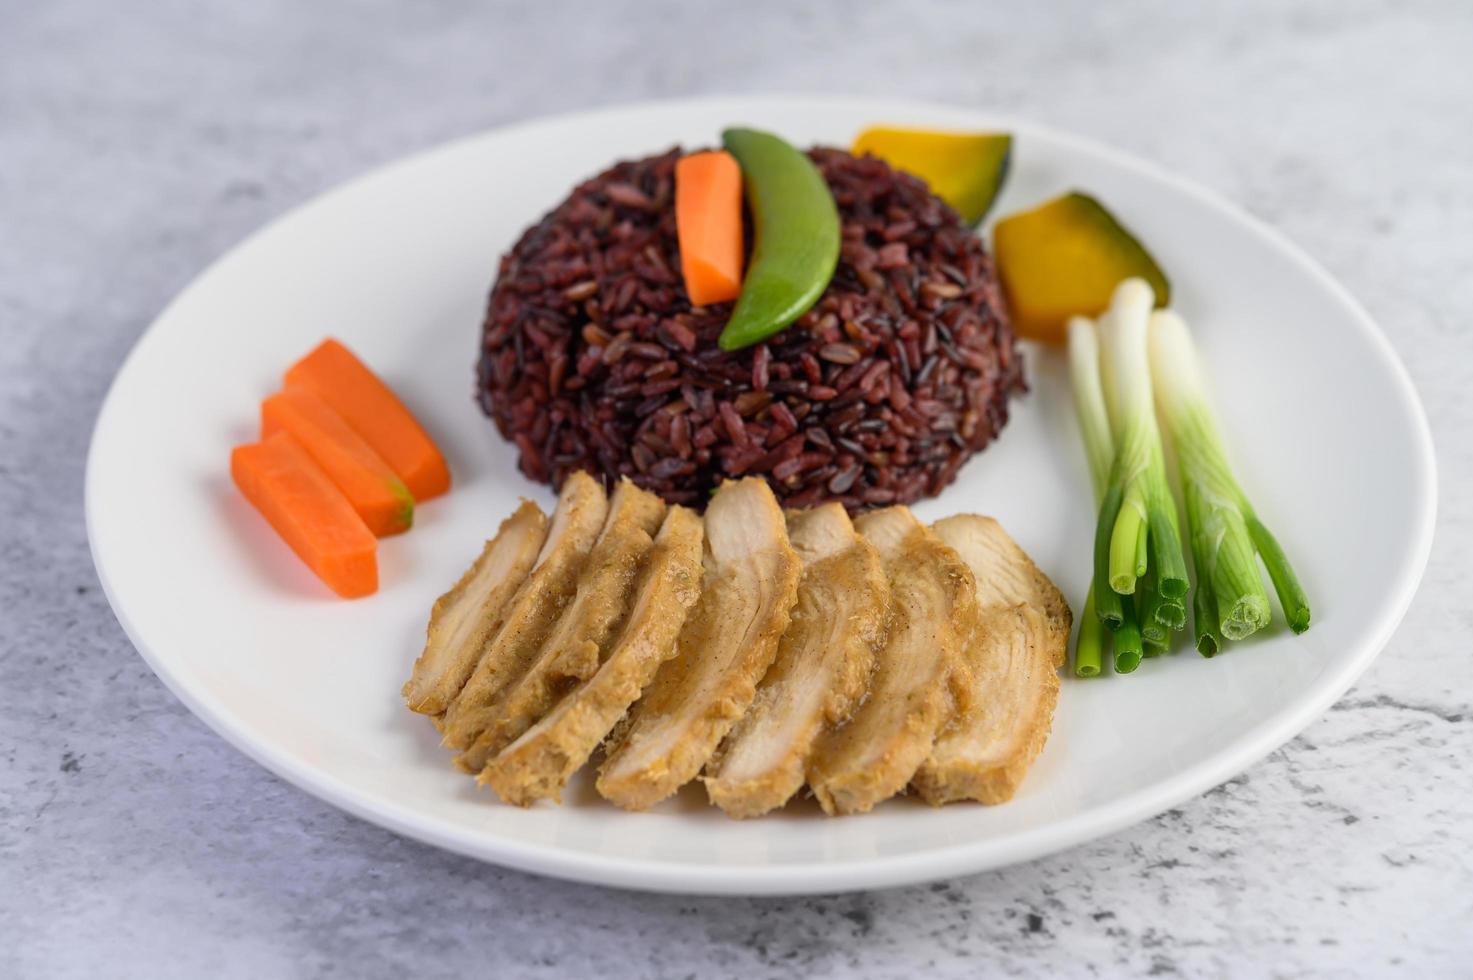 schwarzer Reis mit Kürbis, Erbsen, Karotten, Babymais und gedämpfter Hühnerbrust foto